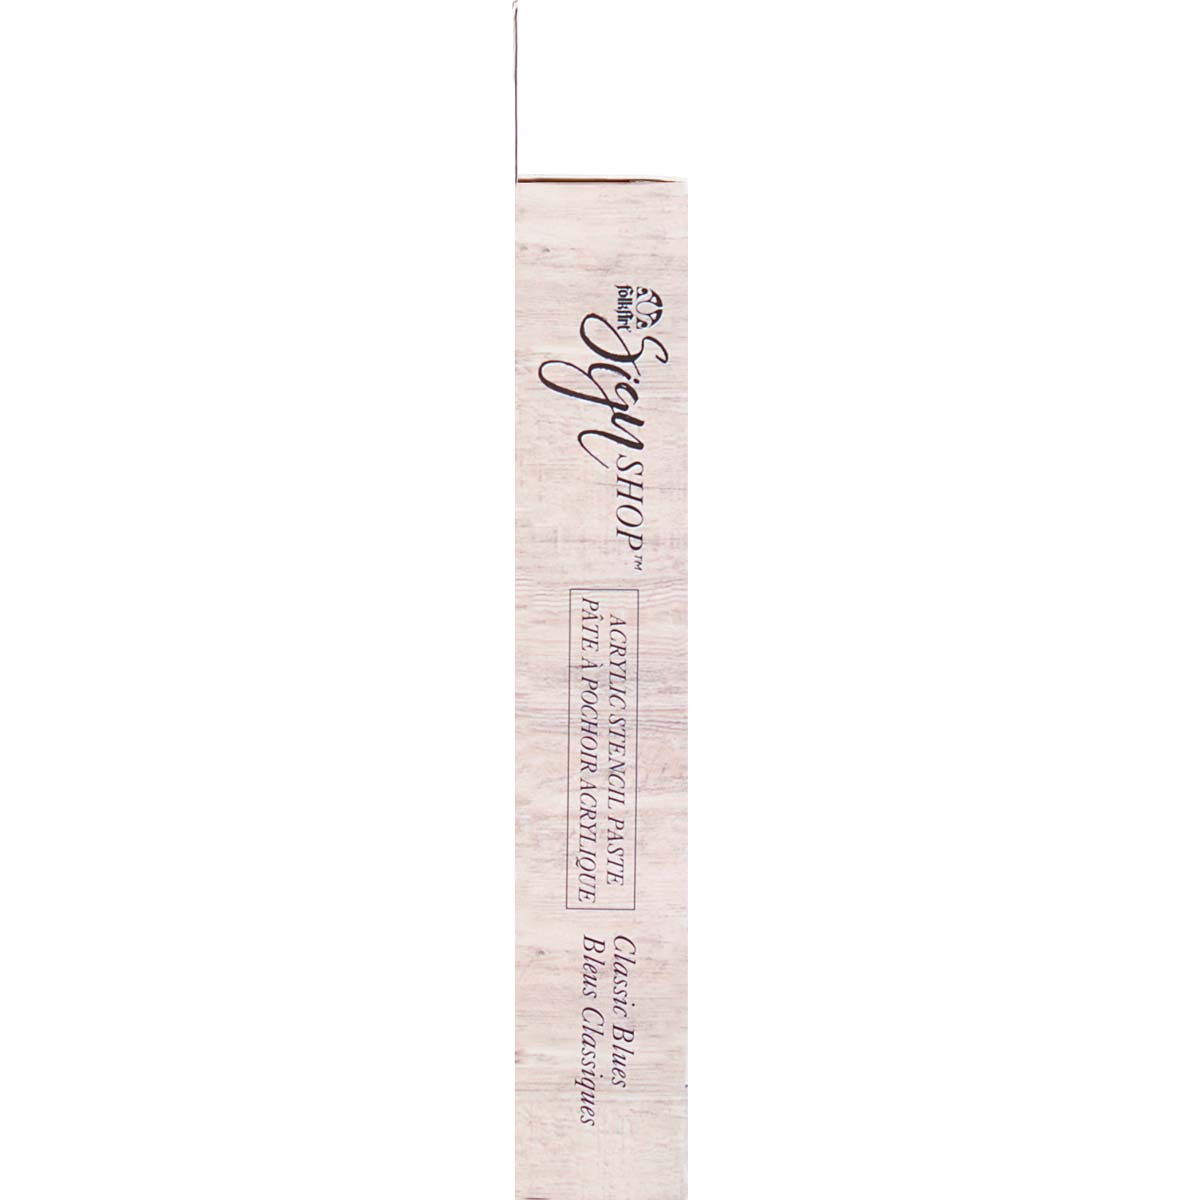 FolkArt ® Sign Shop™ Acrylic Stencil Paste Set - Classic Blues, 6 pc. - 11975